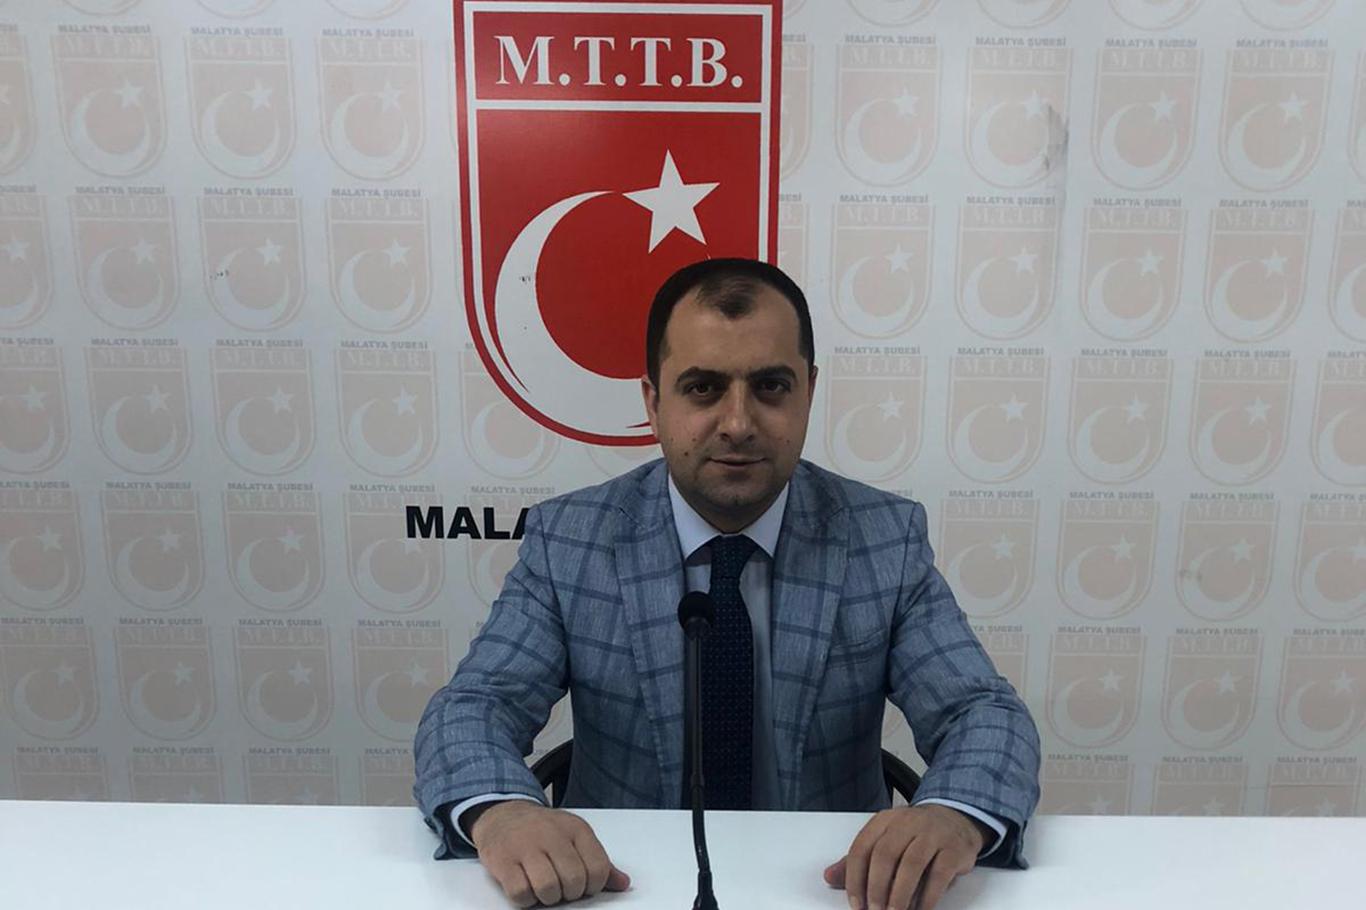 MTTB Malatya İl Başkanı Sağdıç: "Ayasofya tüm Müslümanların kalbindedir"